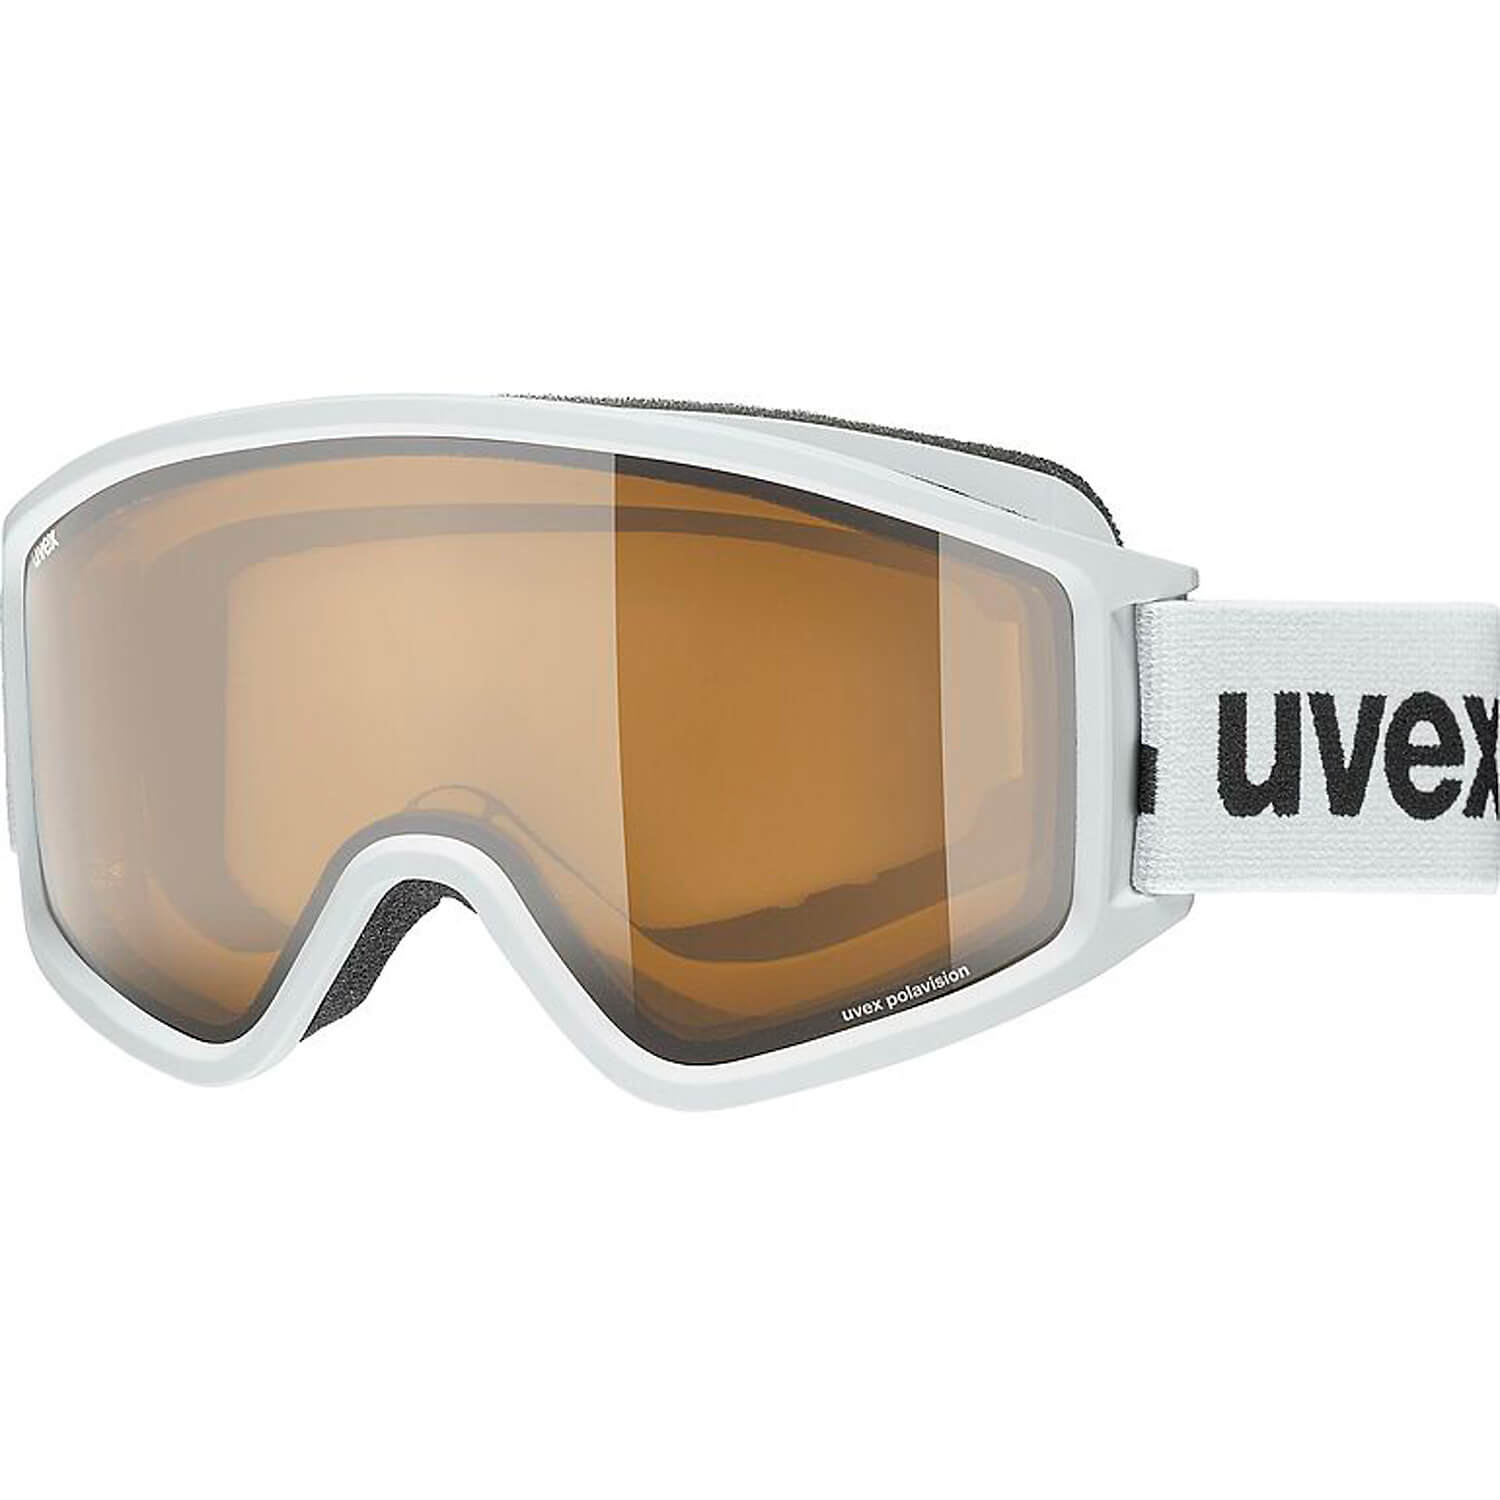 Skibrille uvex g.gl 3000 P